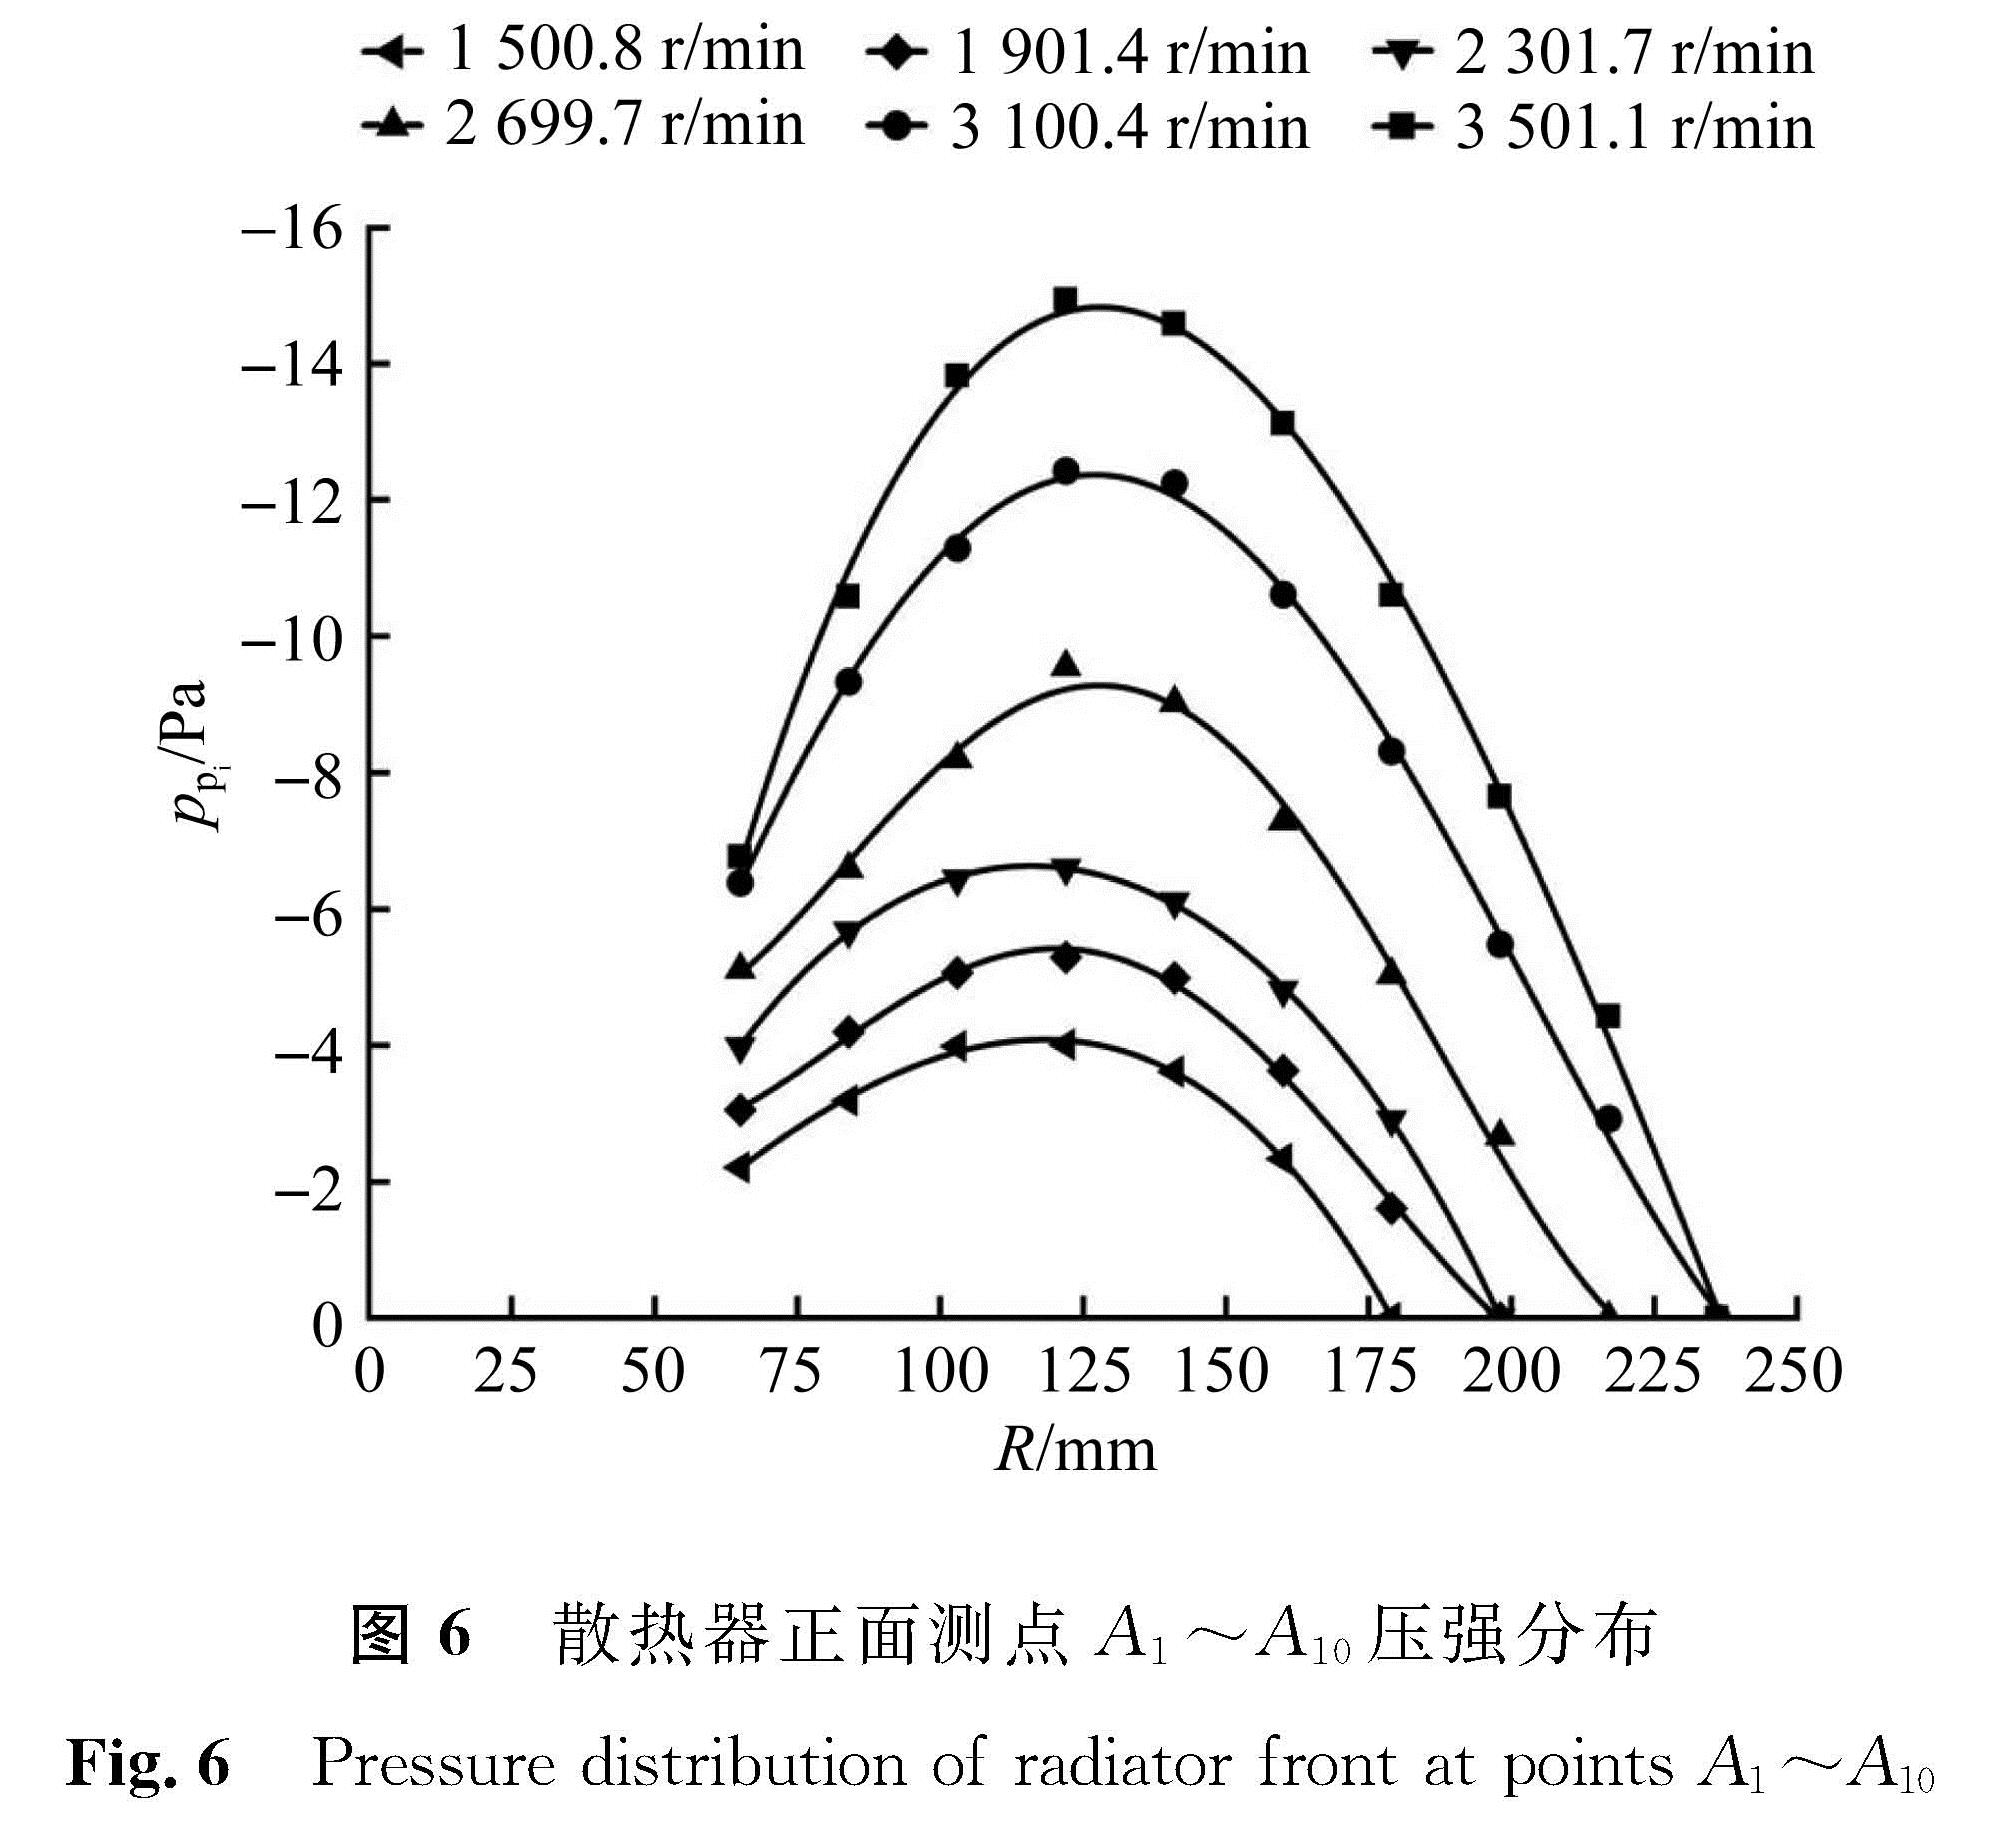 图6 散热器正面测点A1～A10压强分布<br/>Fig.6 Pressure distribution of radiator front at points A1～A10